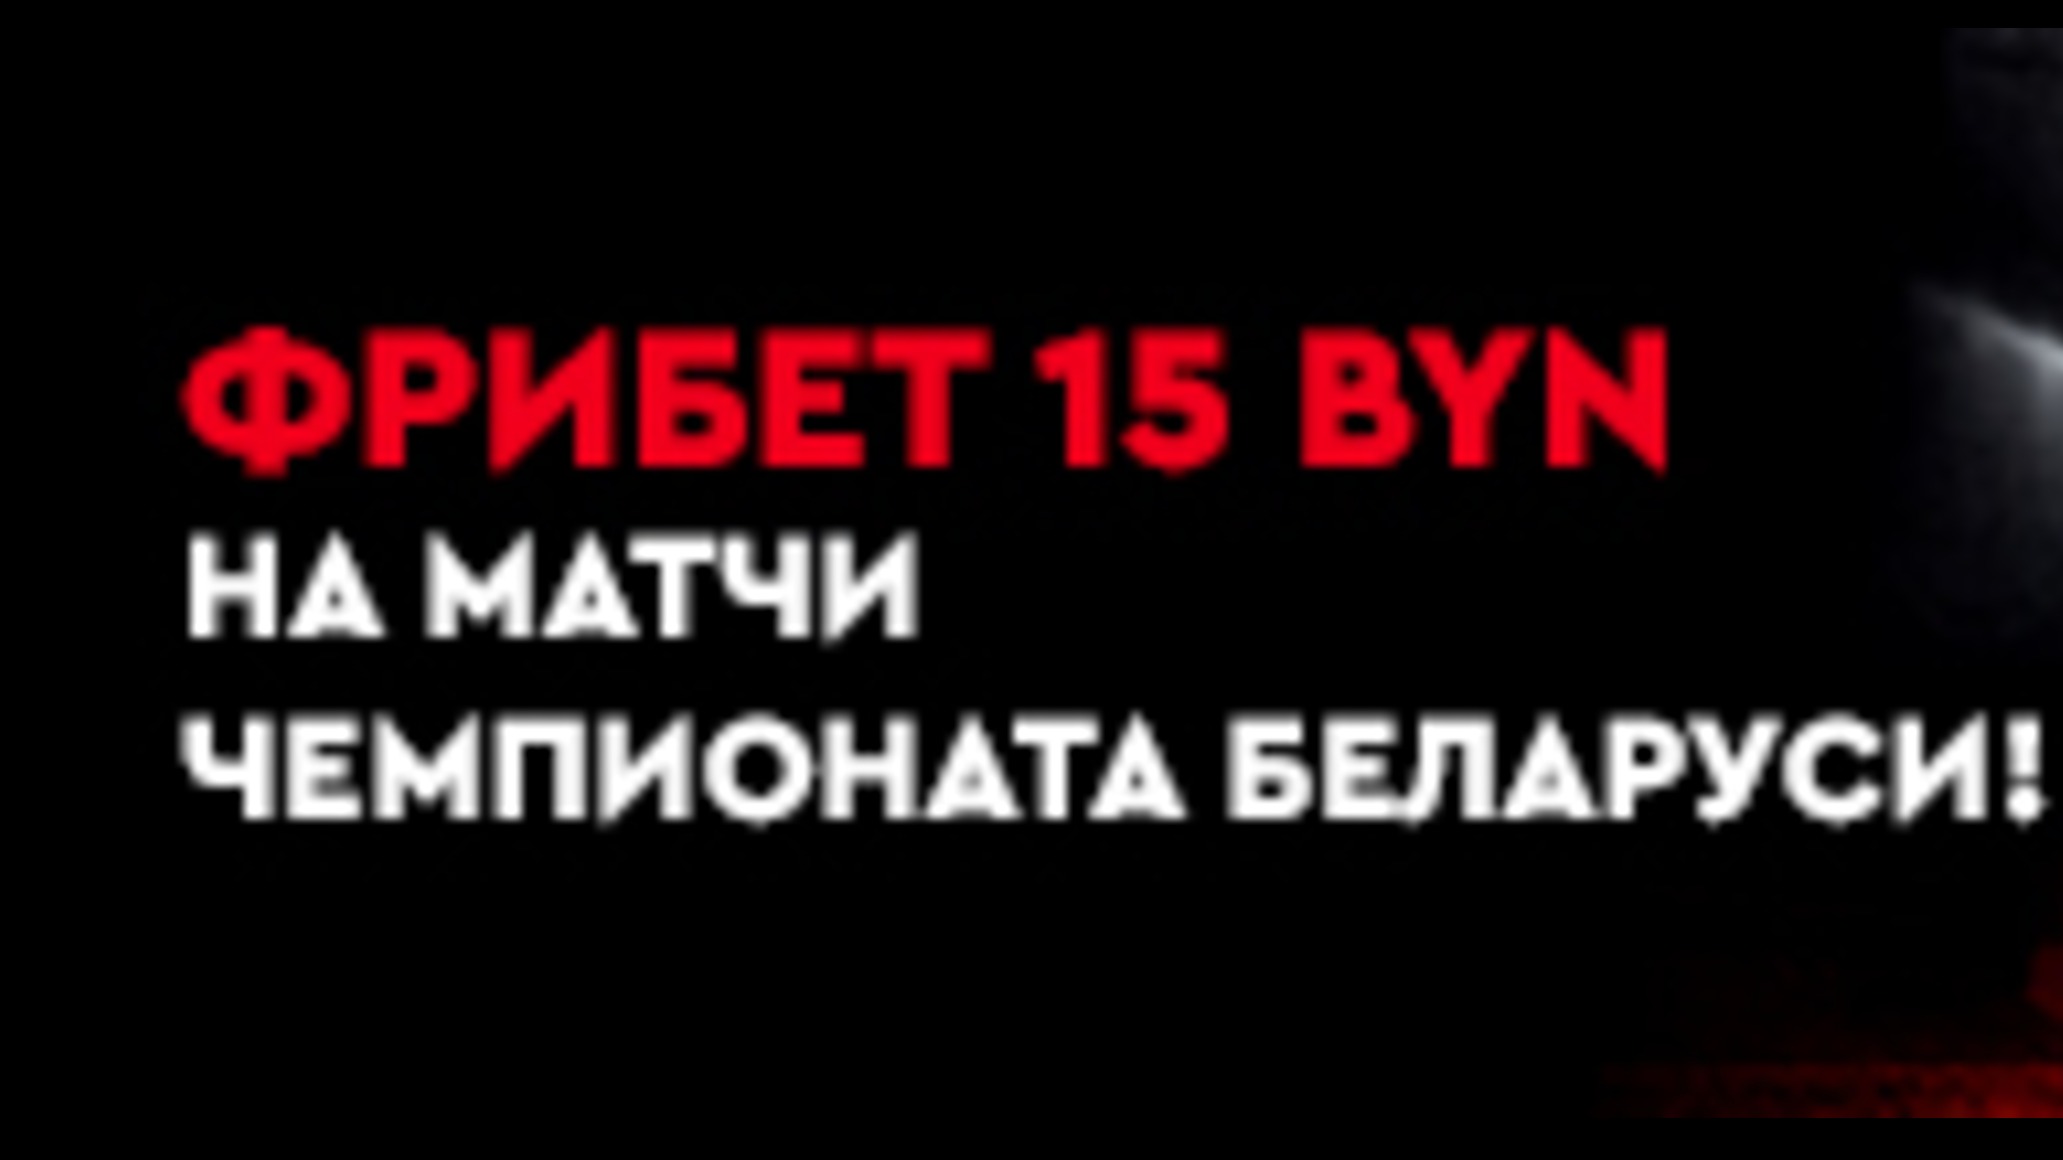 Fonbet BY дарит фрибет на 15 BYN за ставку на чемпионат Беларуси по футболу